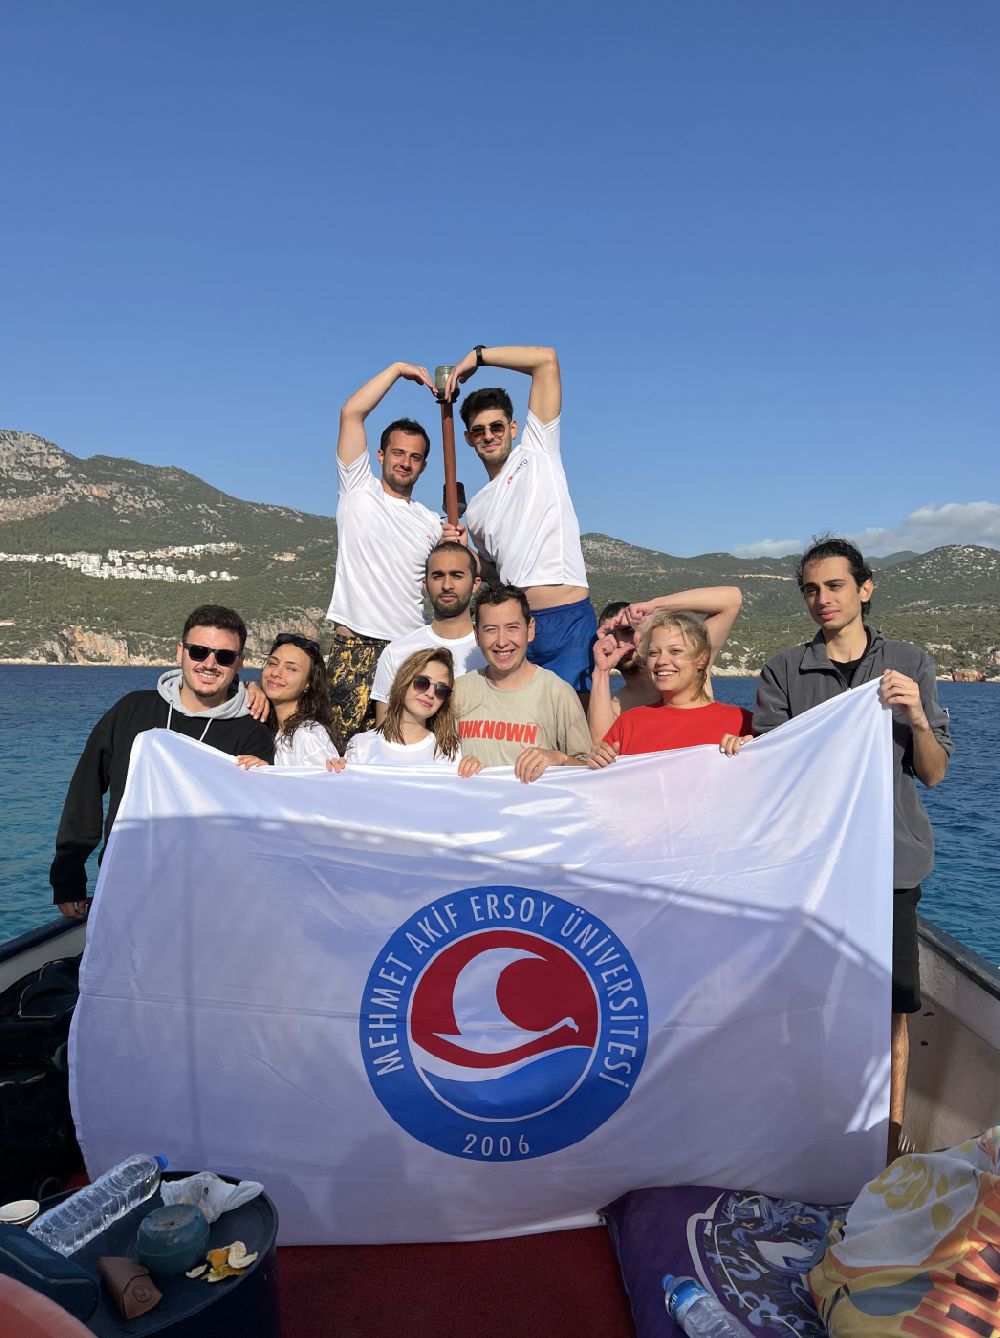 MAKÜ-SAT, Antalya'da CMAS 1 Yıldız tüplü dalış eğitimi düzenledi